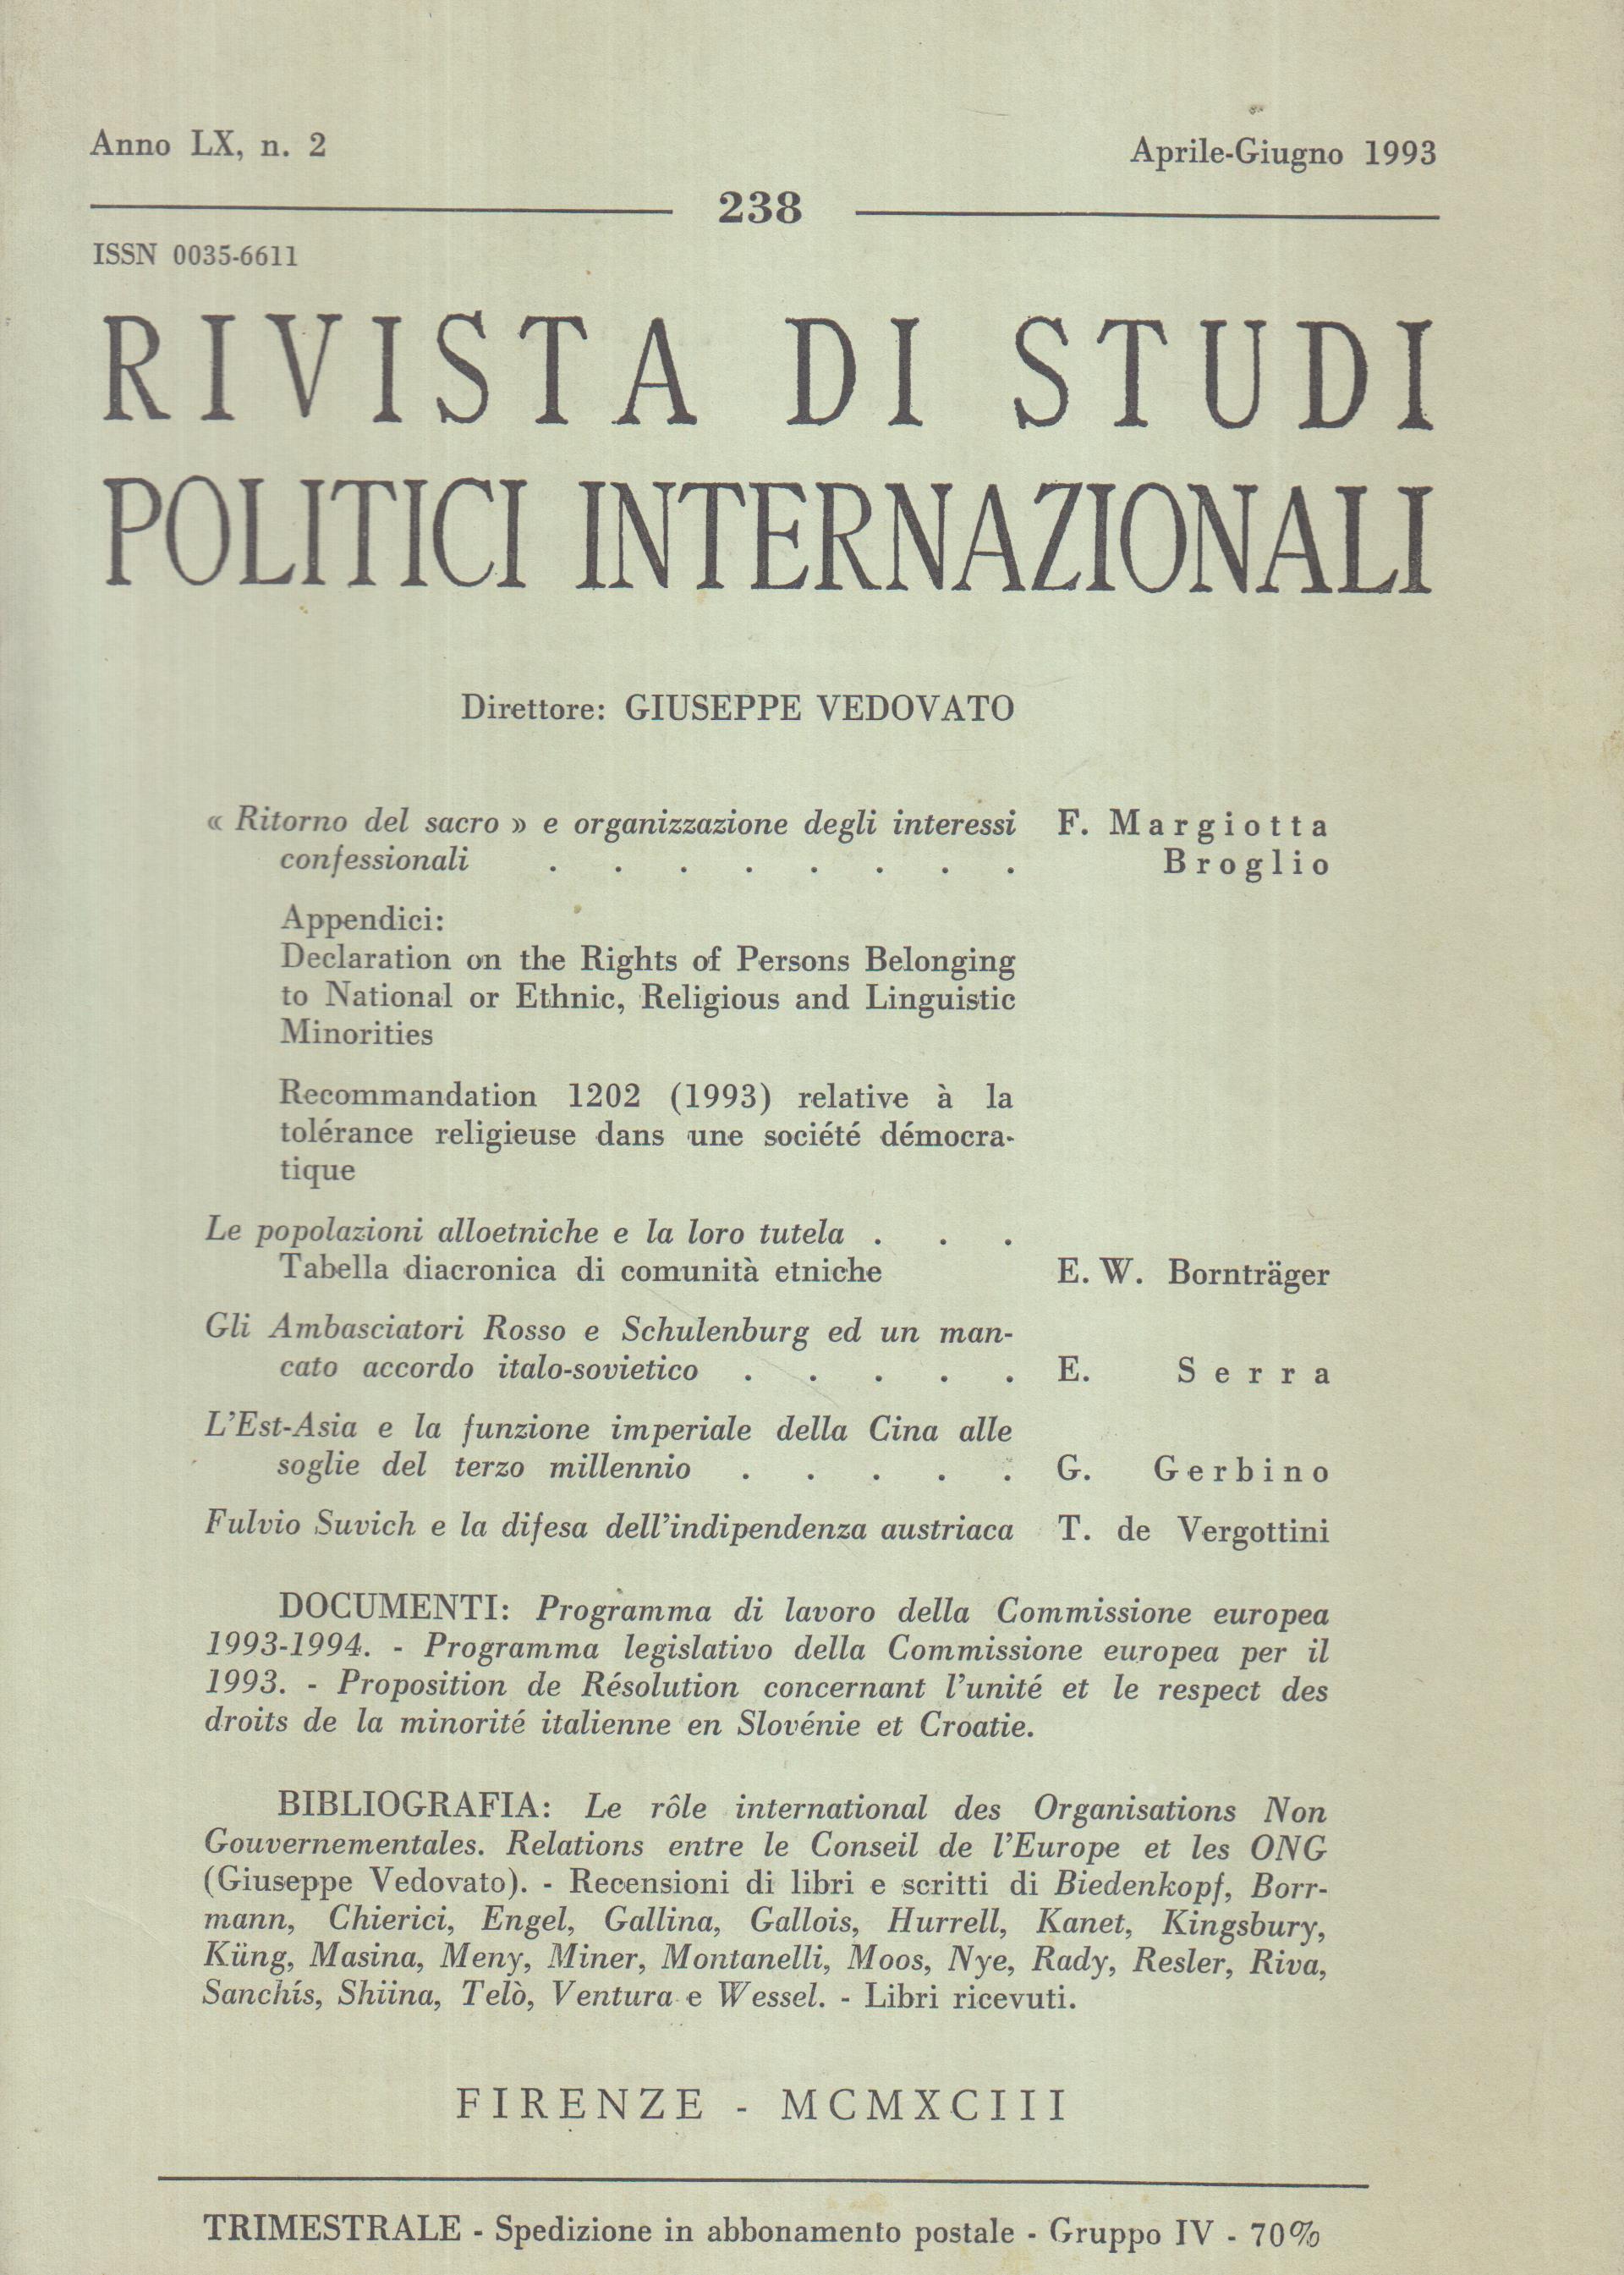  Rivista di Studi Politici Internazionali. 238 Anno LX, n. 2 (Aprile-Giugno 1993)